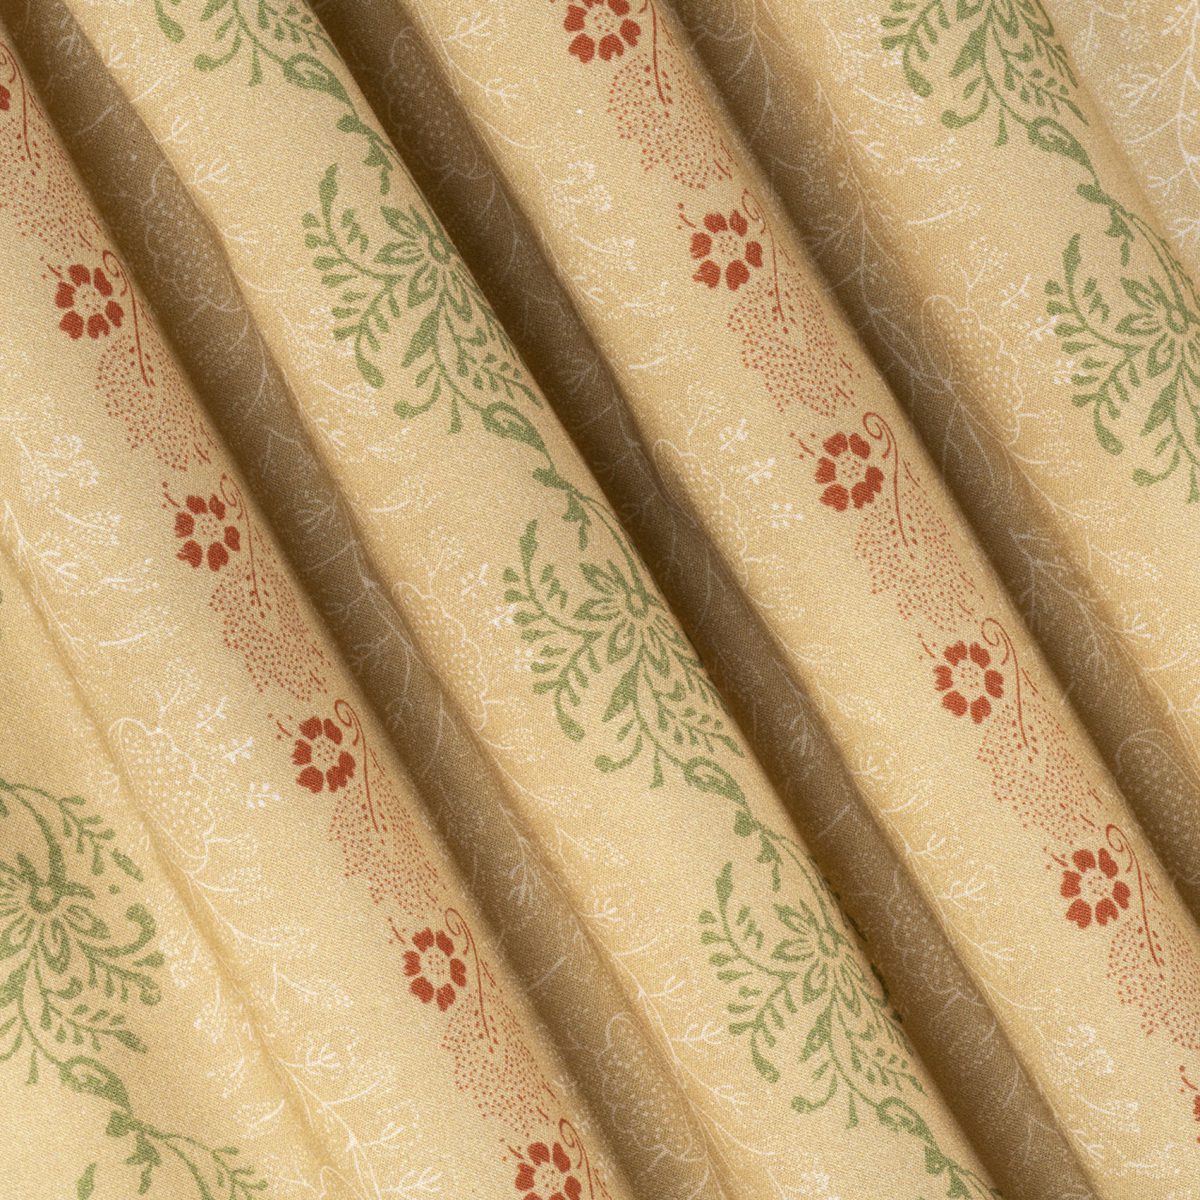 Original Schürzenstoff der Klosterneuburger Tracht aus goldgelber 3-färbiger Baumwolle Schürzenstreif